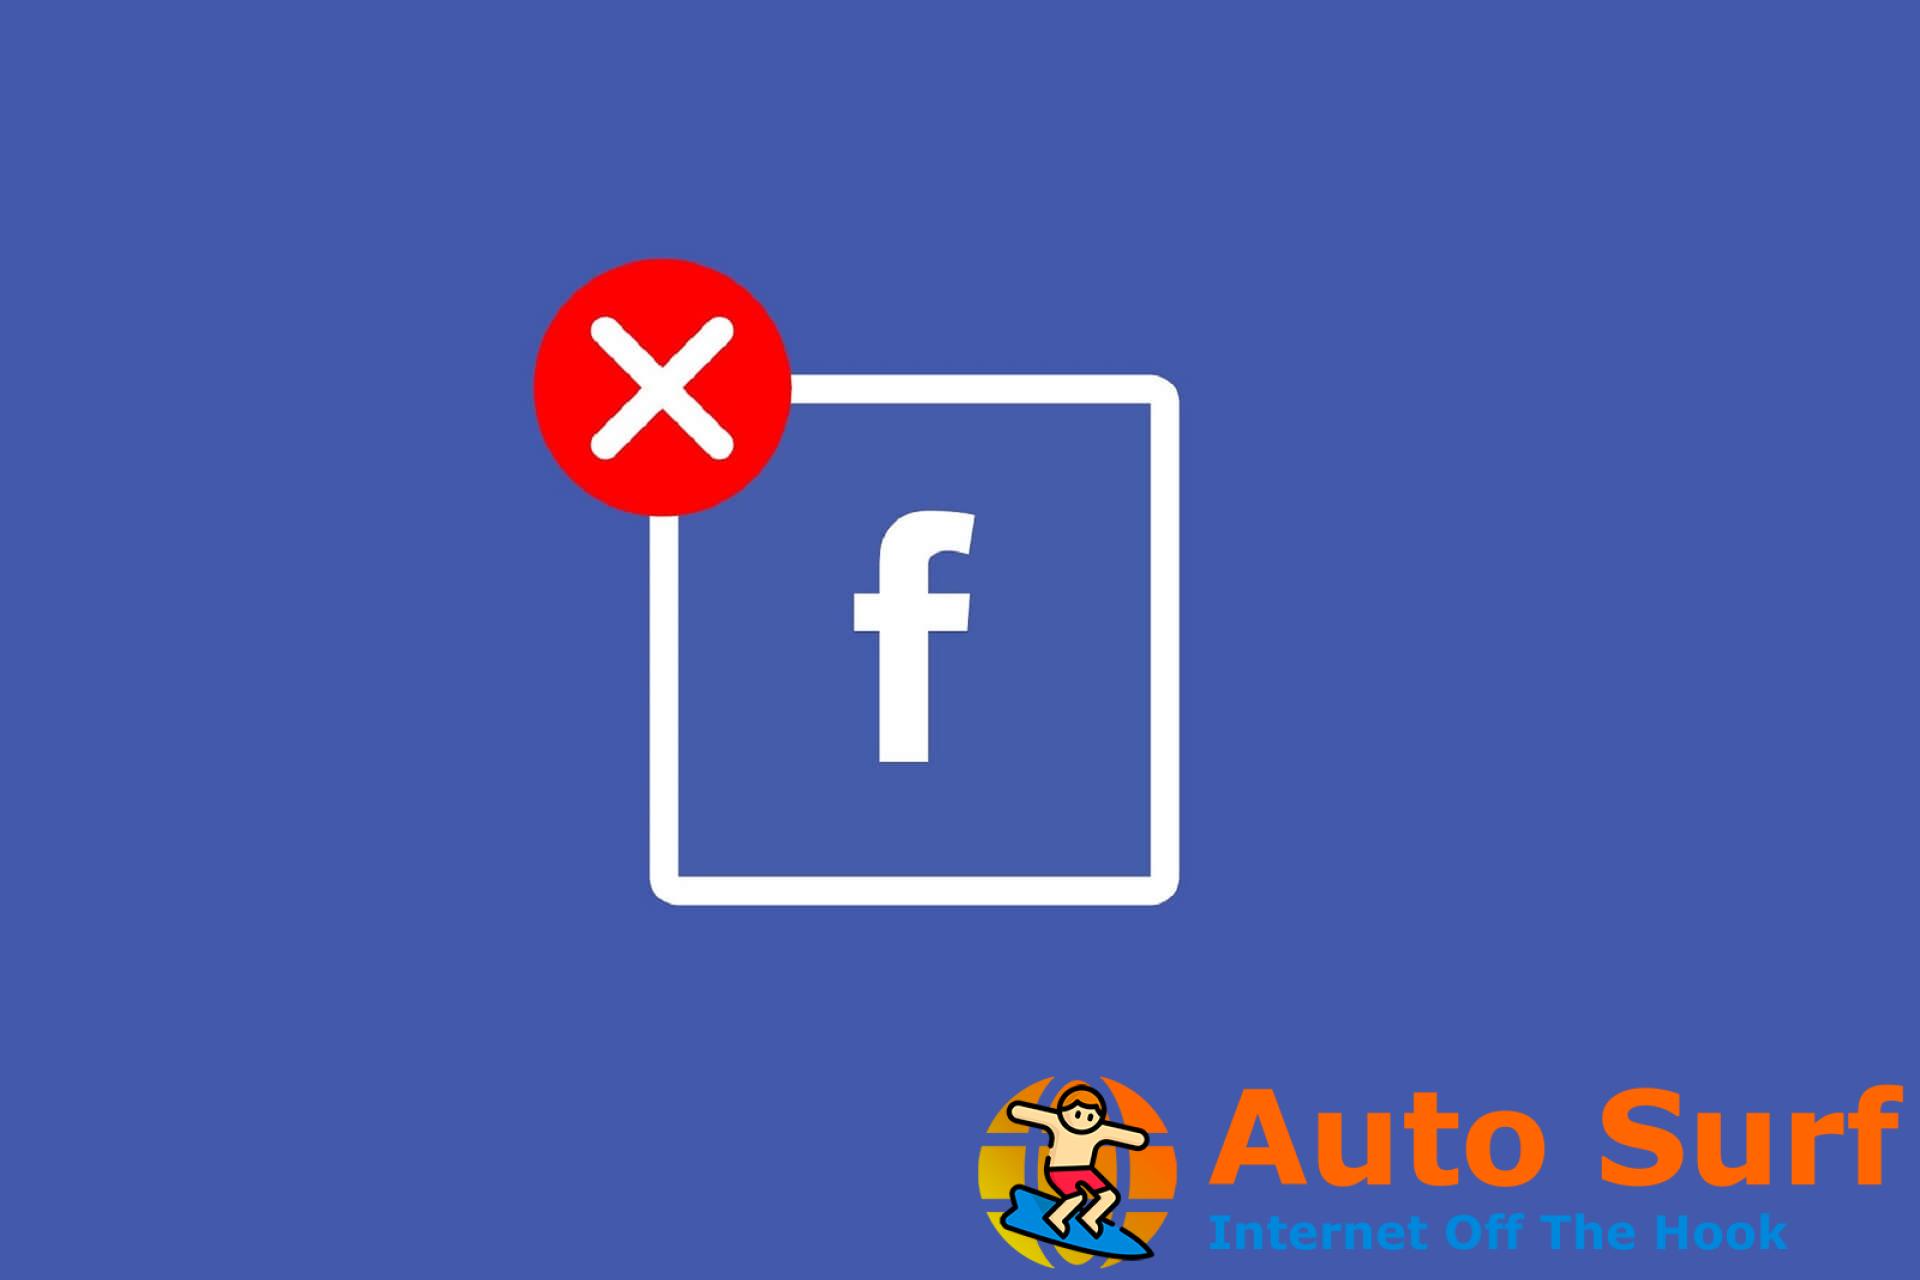 REVISIÓN: esta página no es elegible para tener un nombre de usuario en Facebook